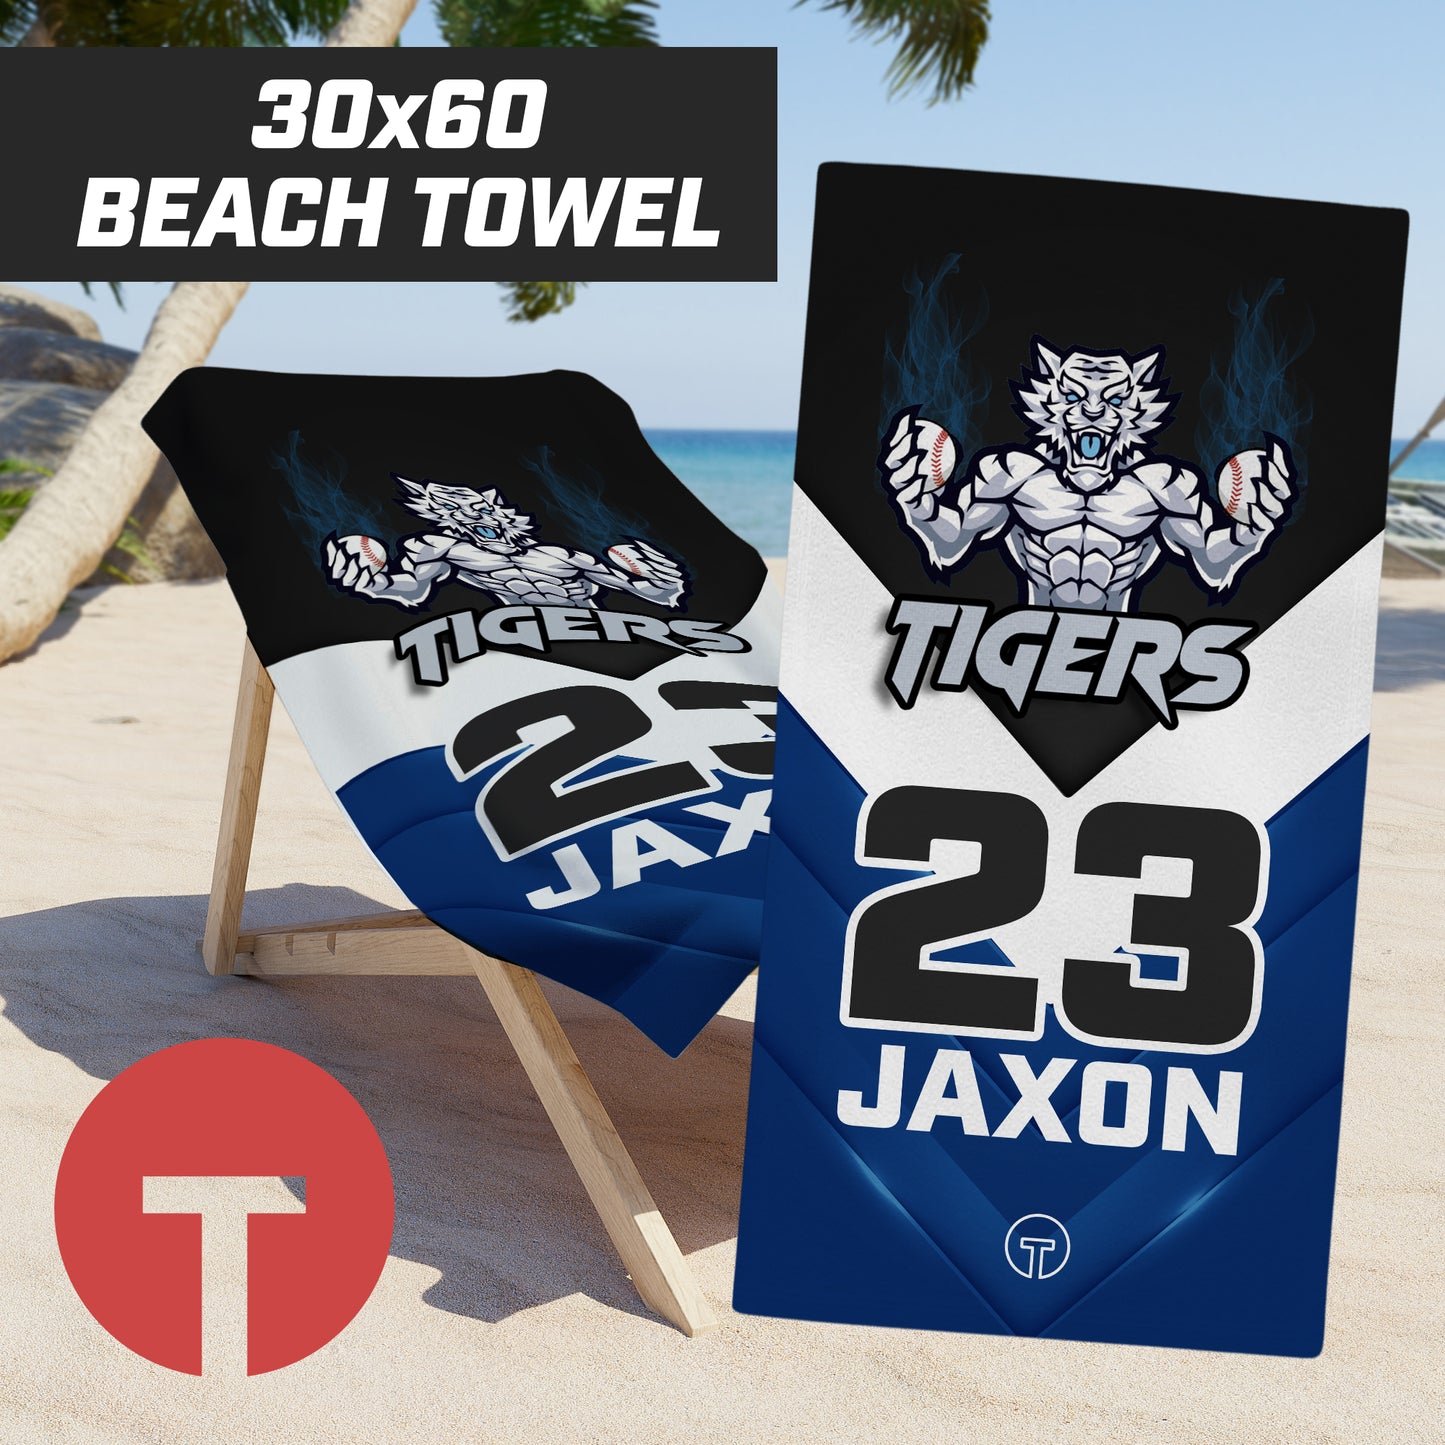 Tigers J Leon - 30"x60" Beach Towel